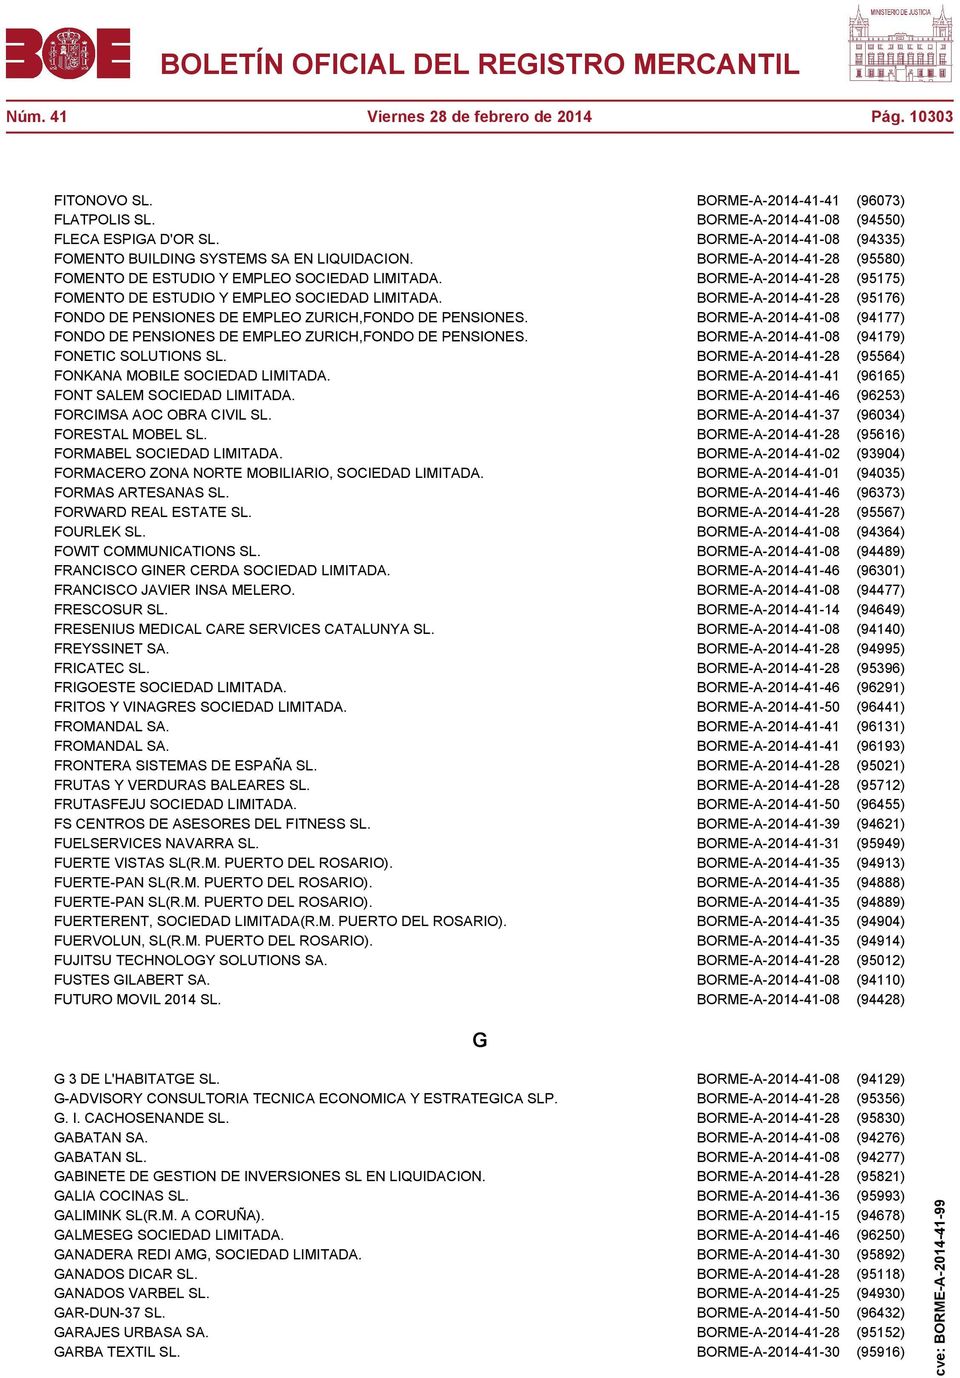 BORME-A-2014-41-28 (95175) FOMENTO DE ESTUDIO Y EMPLEO SOCIEDAD LIMITADA. BORME-A-2014-41-28 (95176) FONDO DE PENSIONES DE EMPLEO ZURICH,FONDO DE PENSIONES.